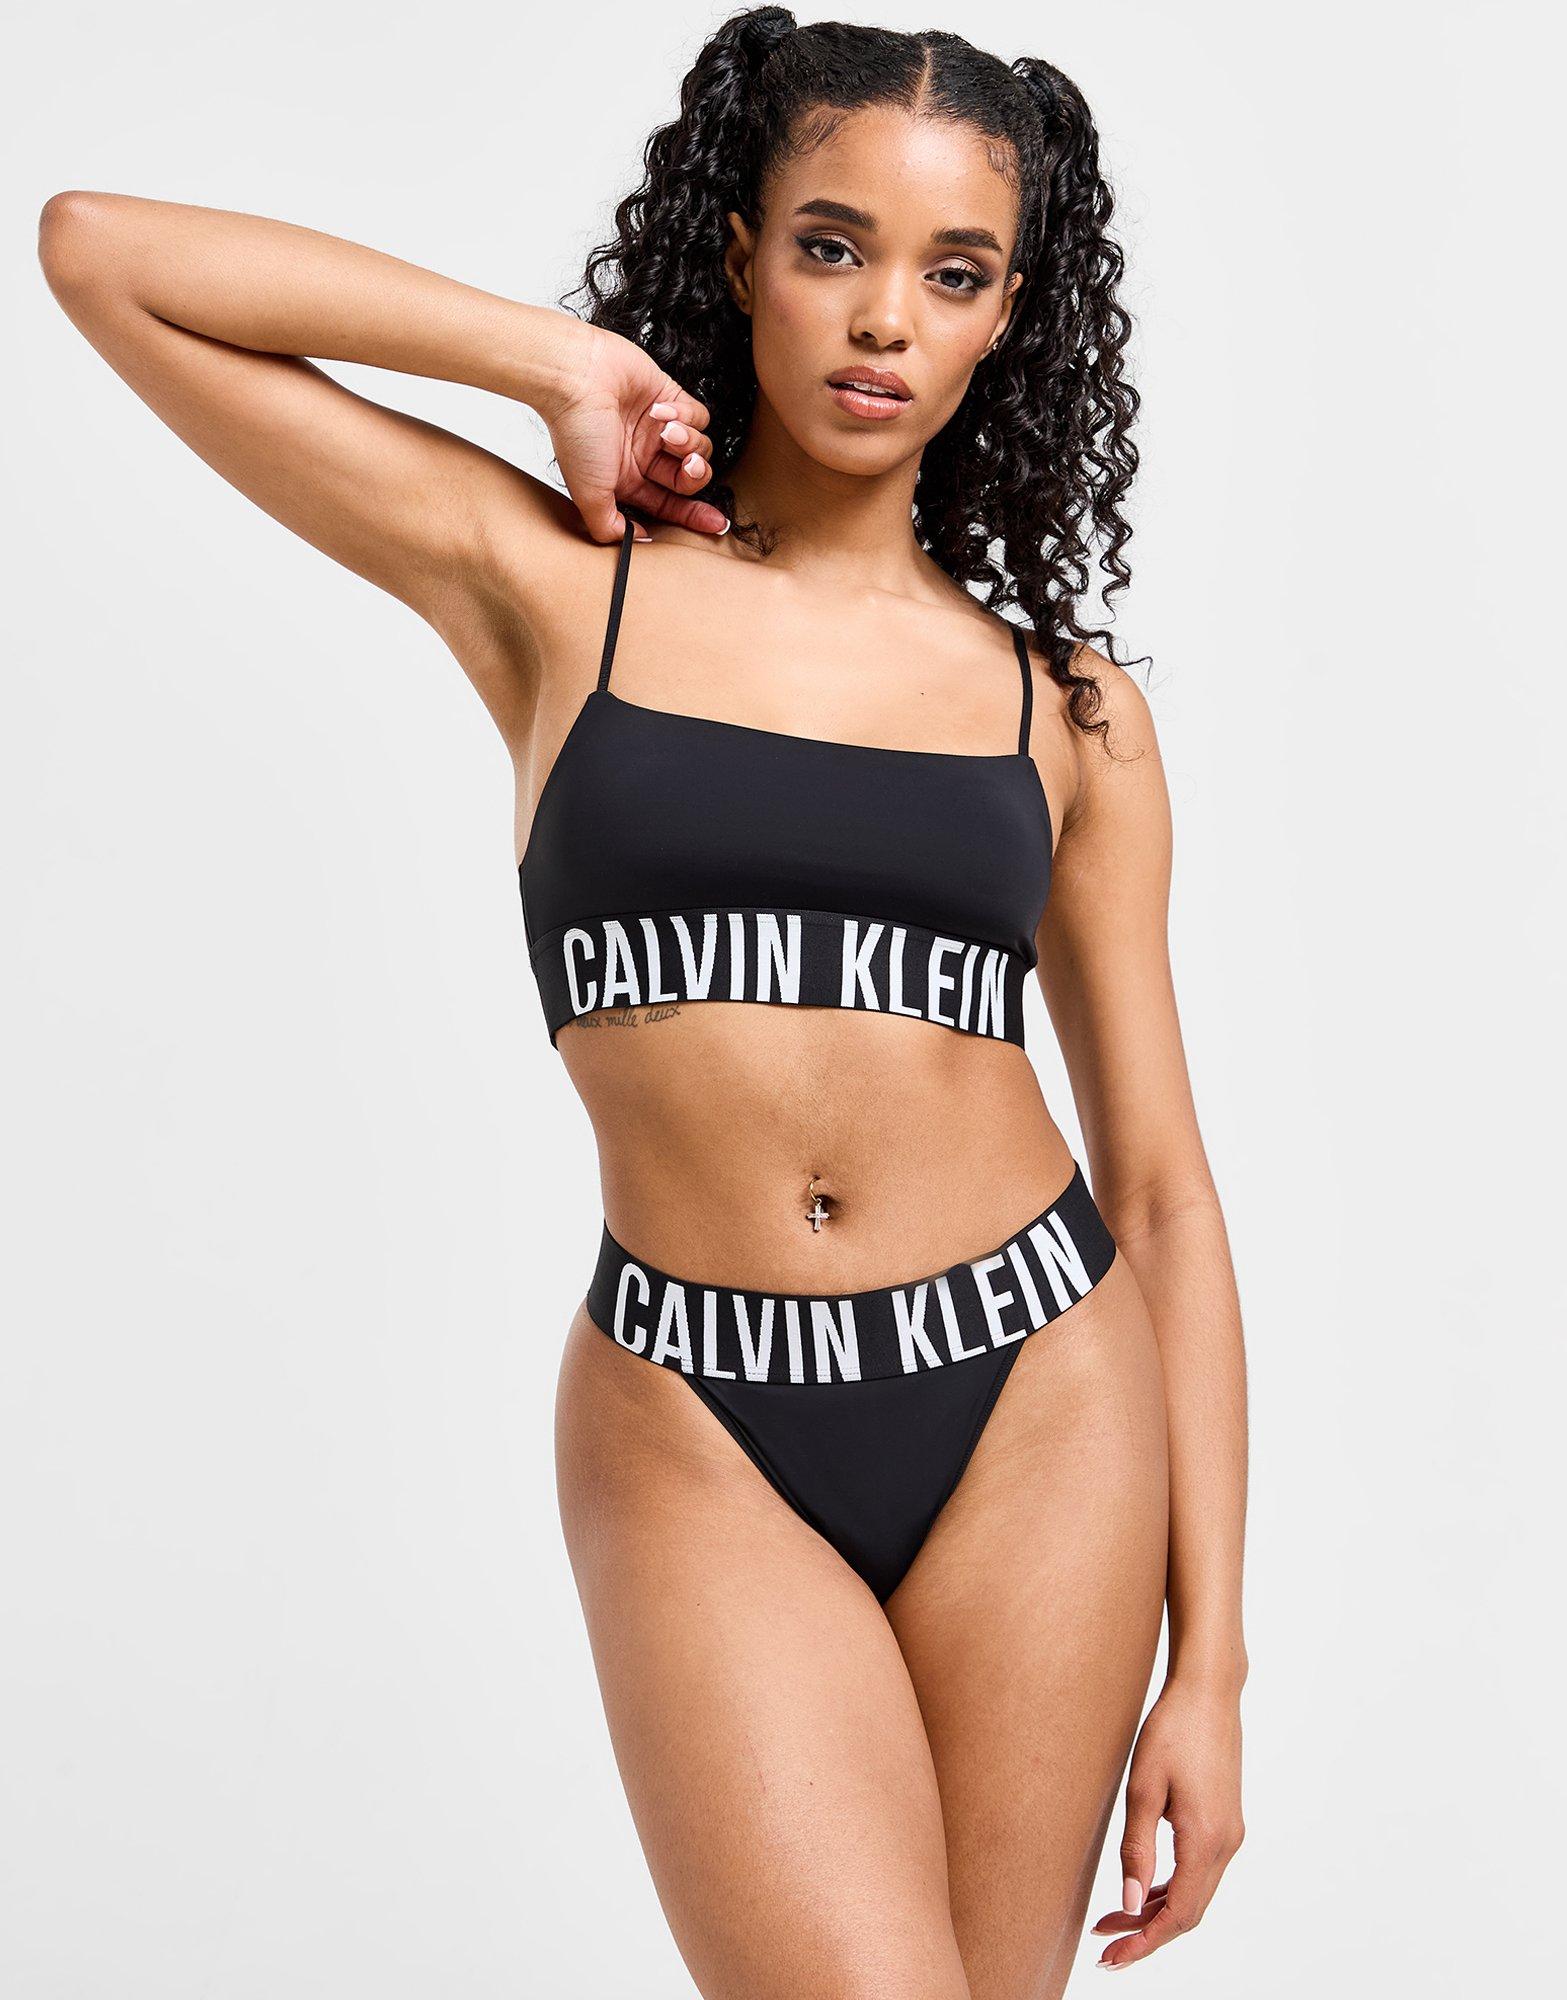 Calvin Klein, Intimates & Sleepwear, Calvin Klein Bra 32c